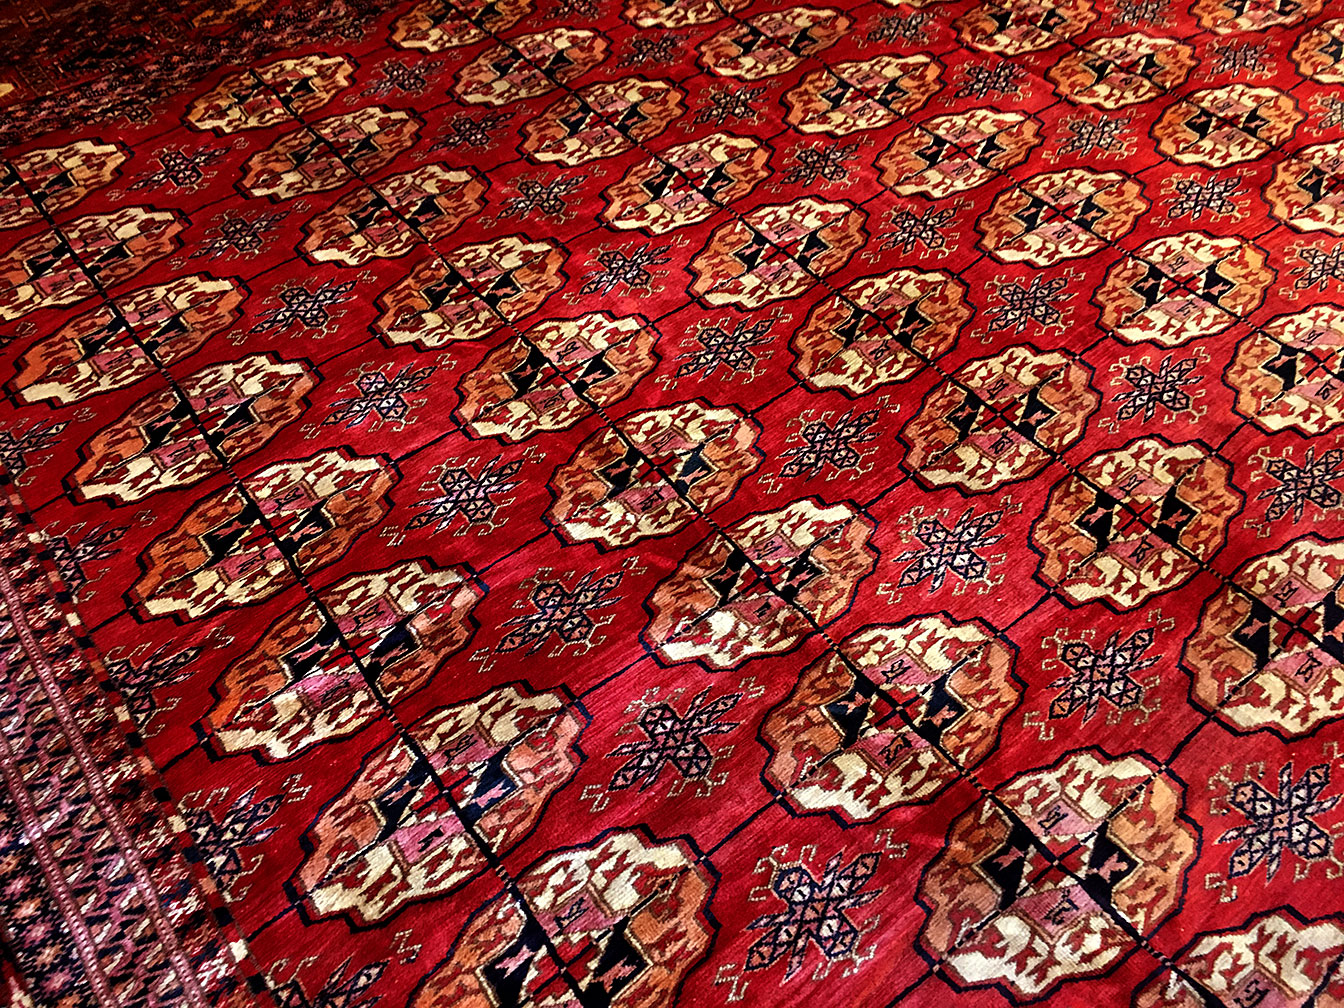 Antique tekke Carpet - # 53402